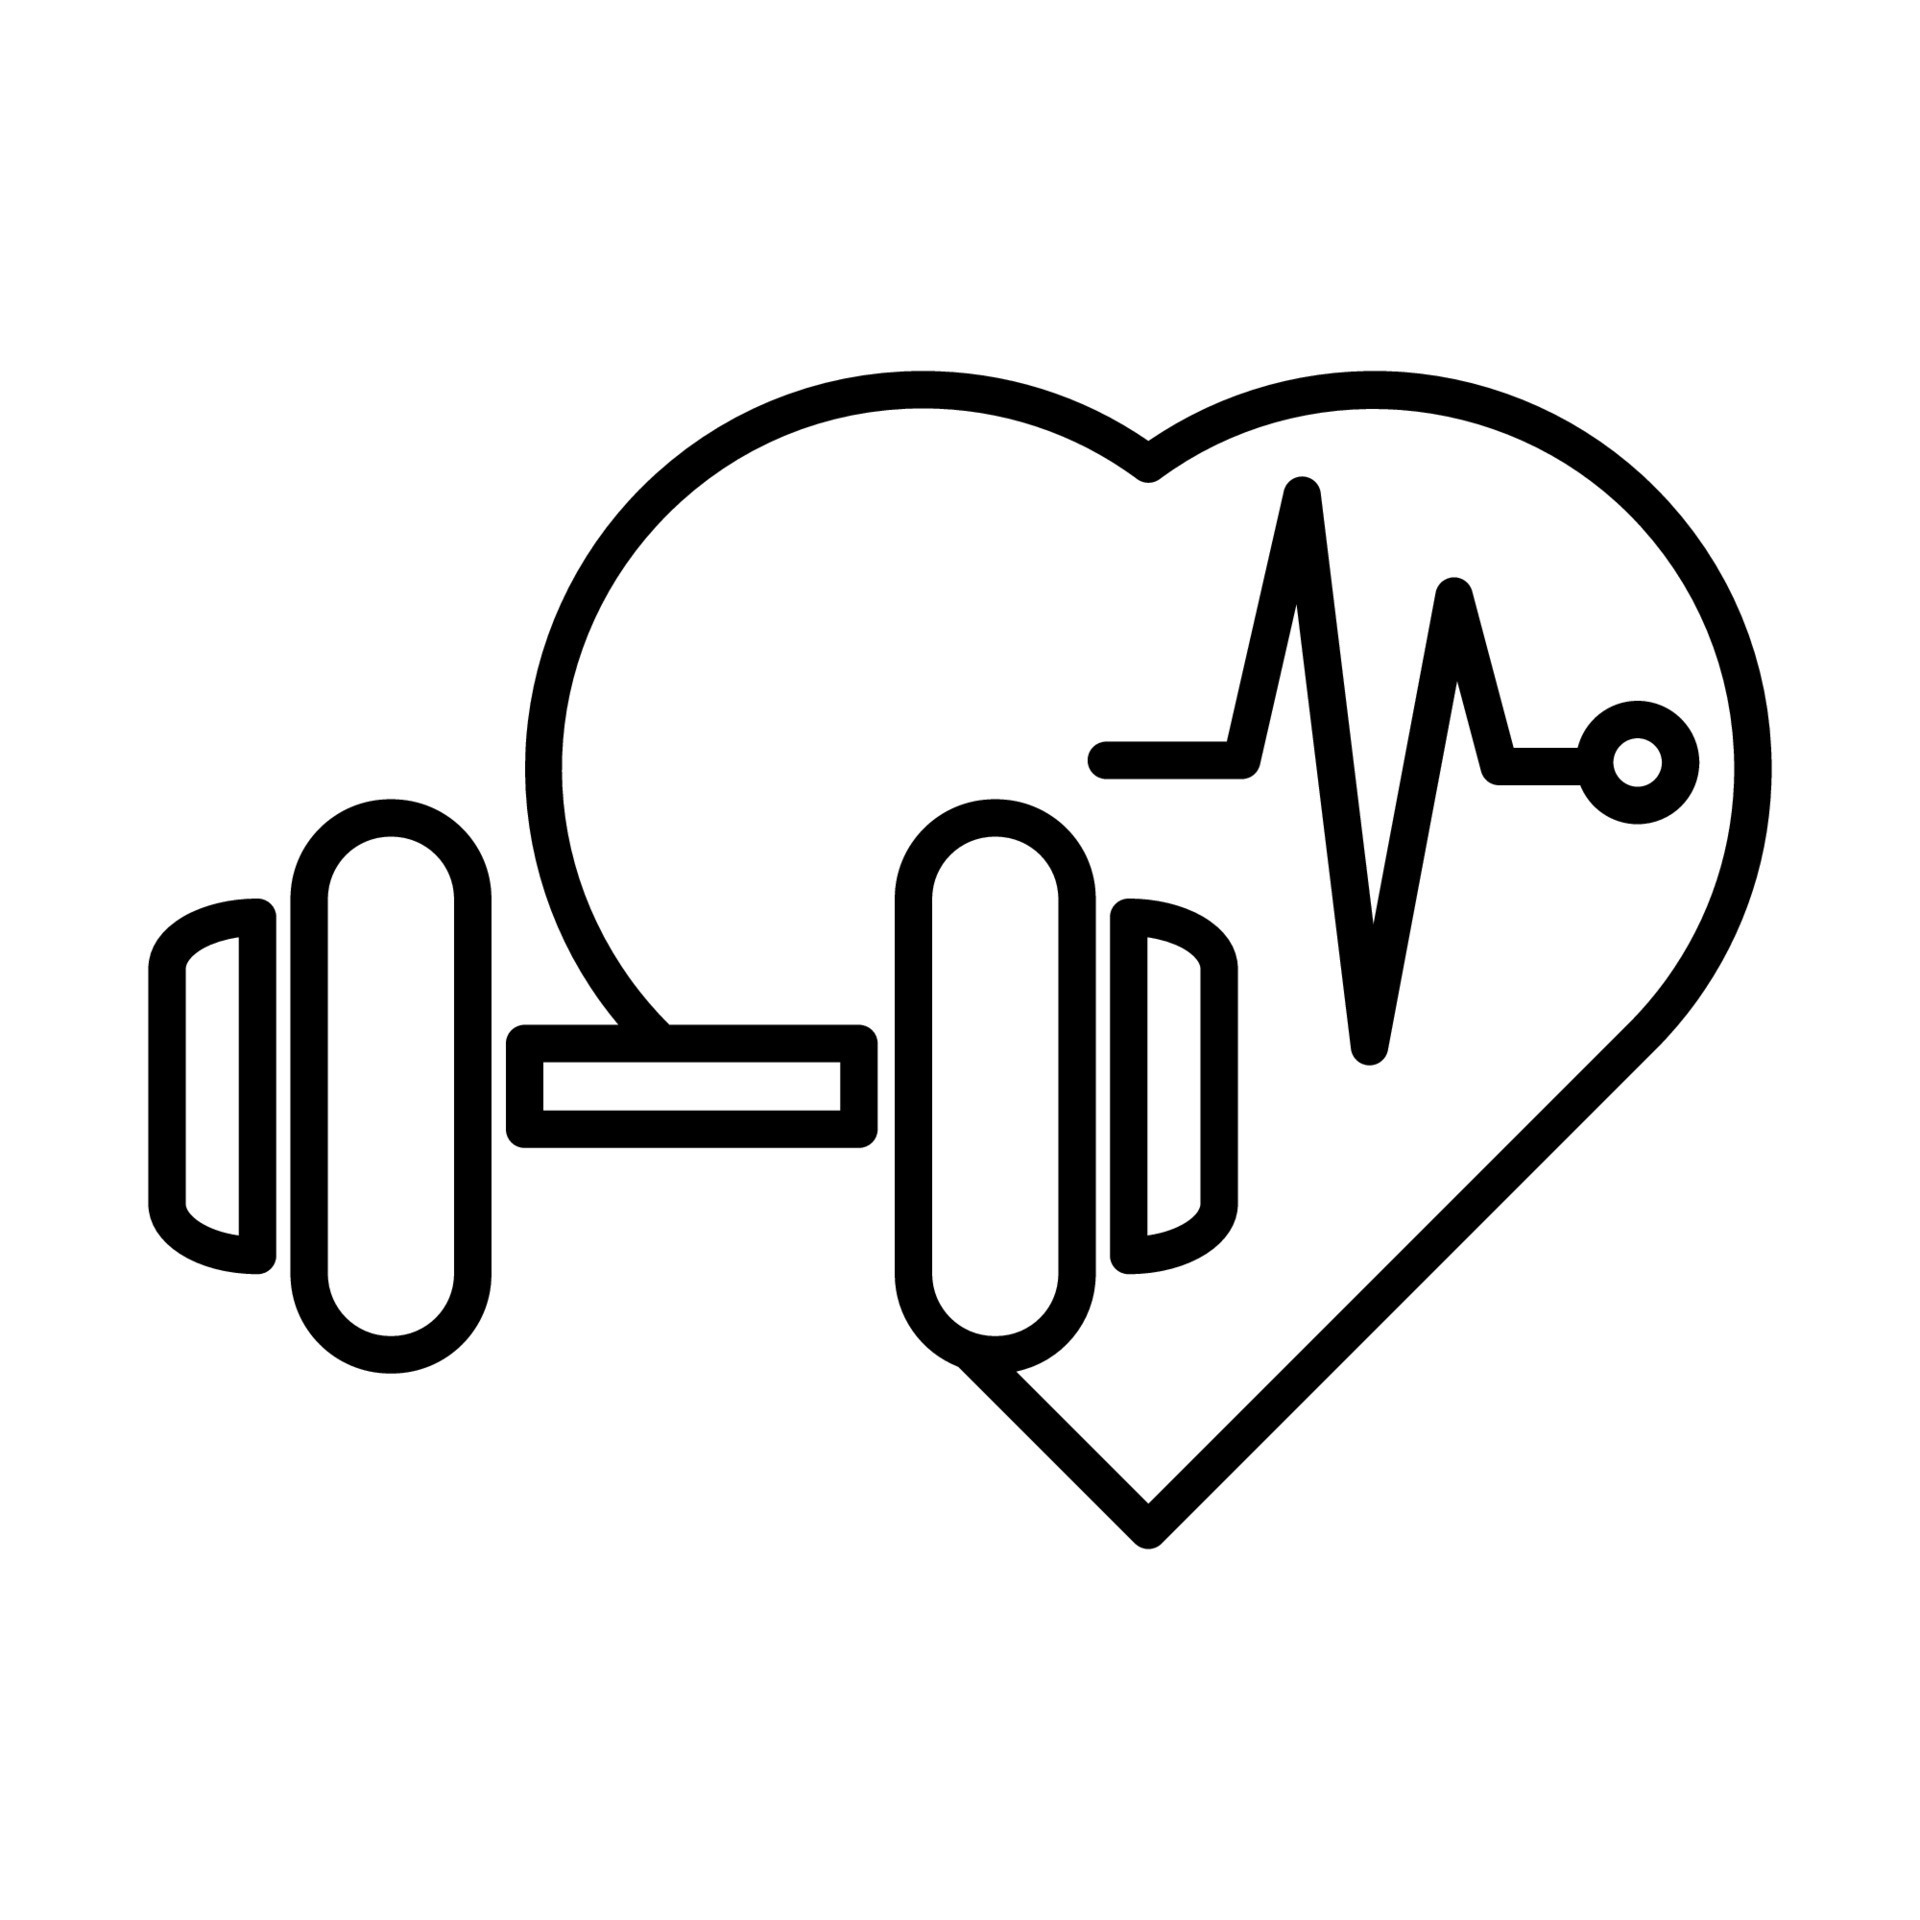 halster hartslag icoon ontwerp. halters voor sport- hal, fitheid, Gezondheid, en werkzaamheid pictogrammen. zwart lijn 13336669 Vectorkunst Vecteezy